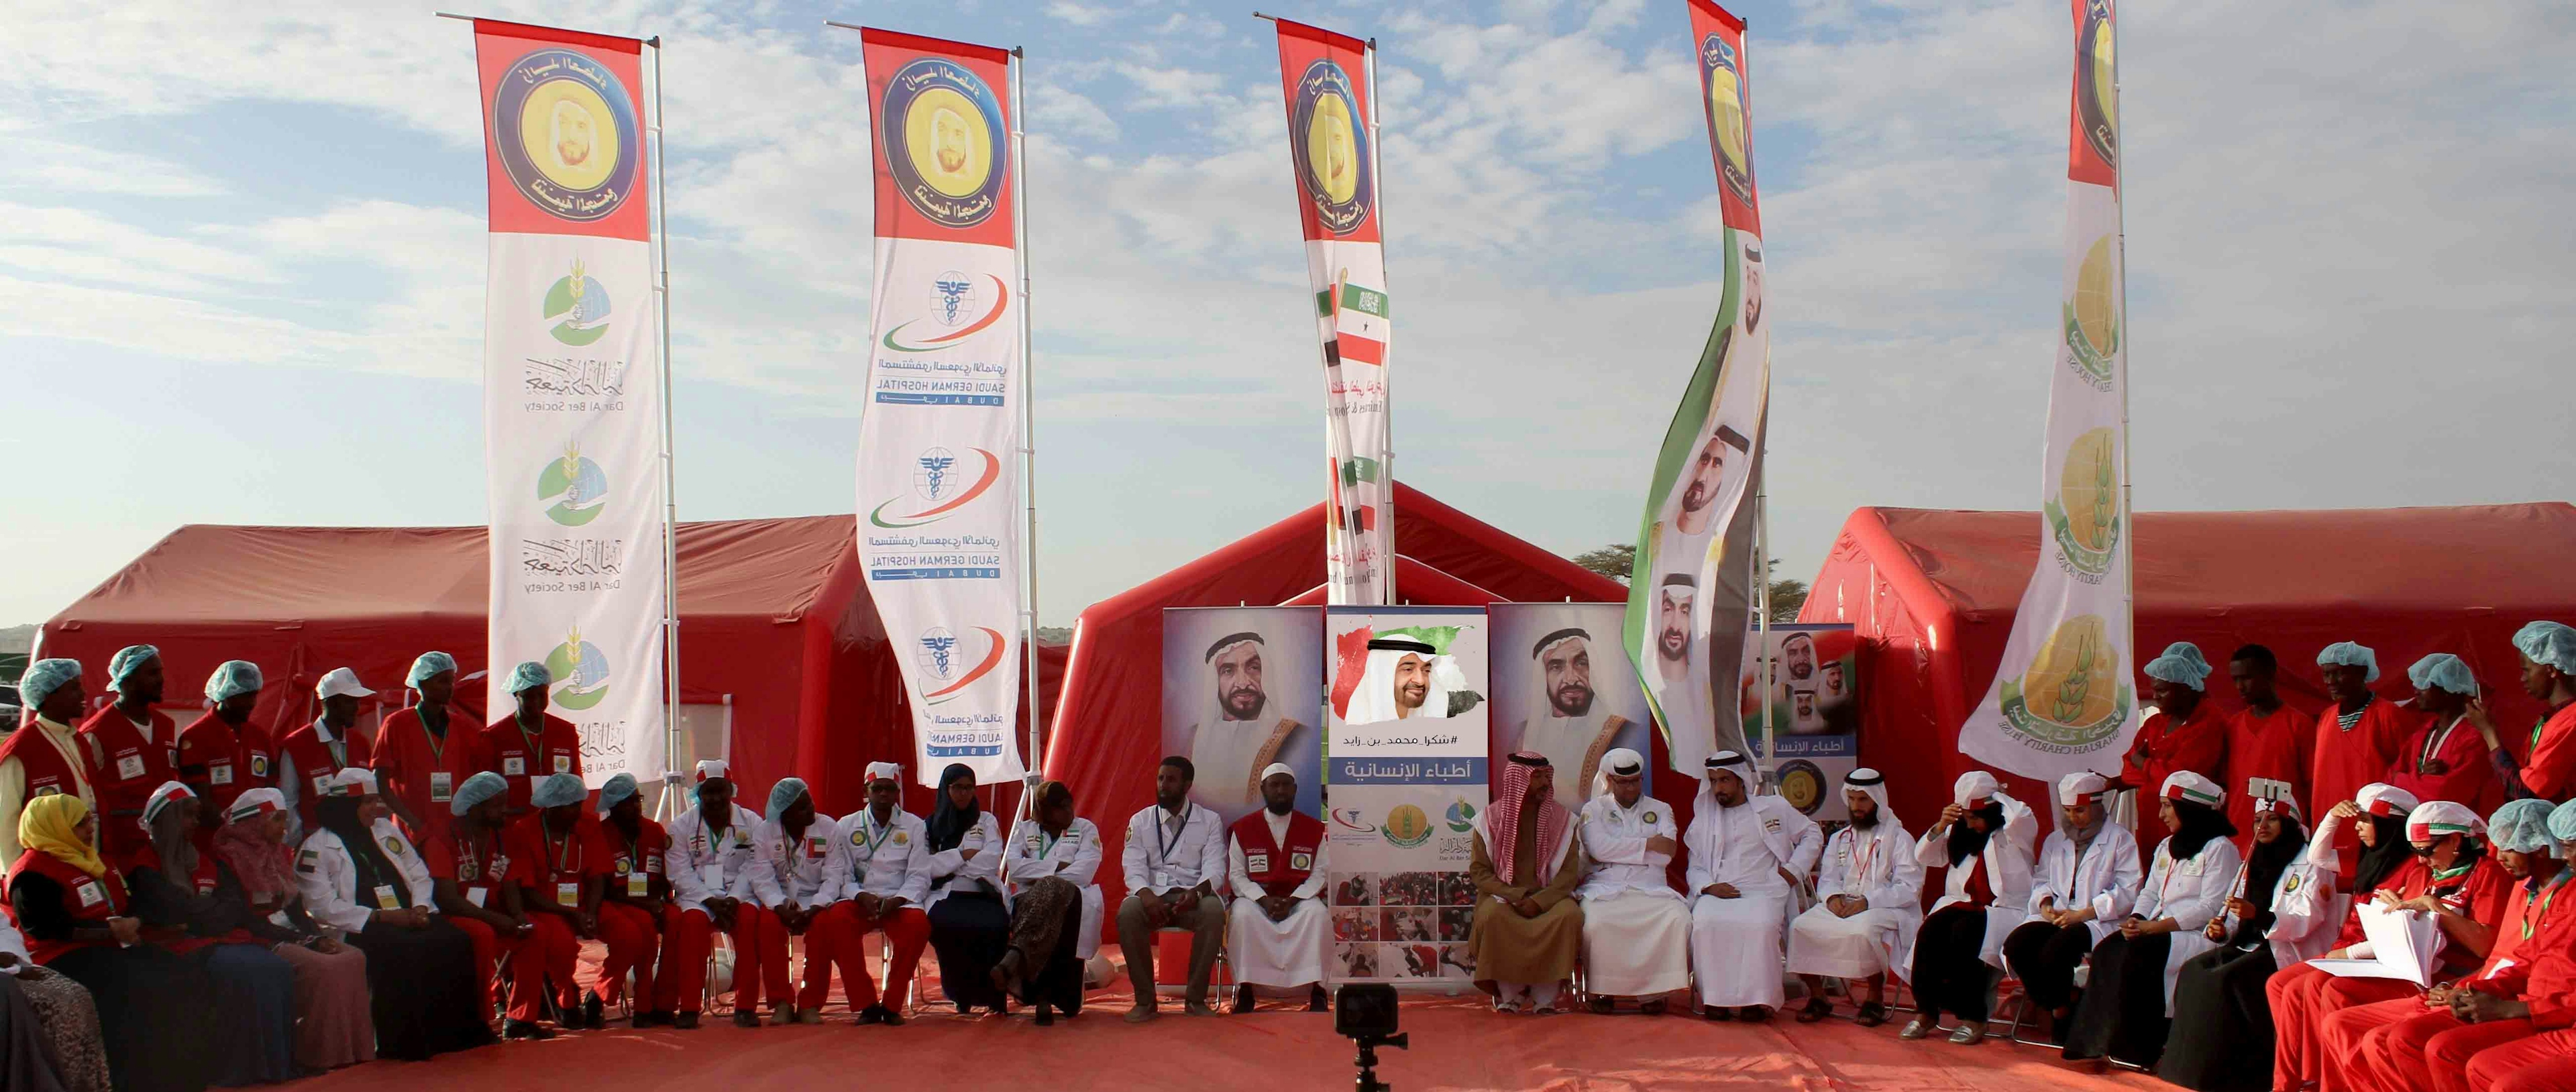 أبرز مبادرات وبرامج العمل التطوعي في الإمارات